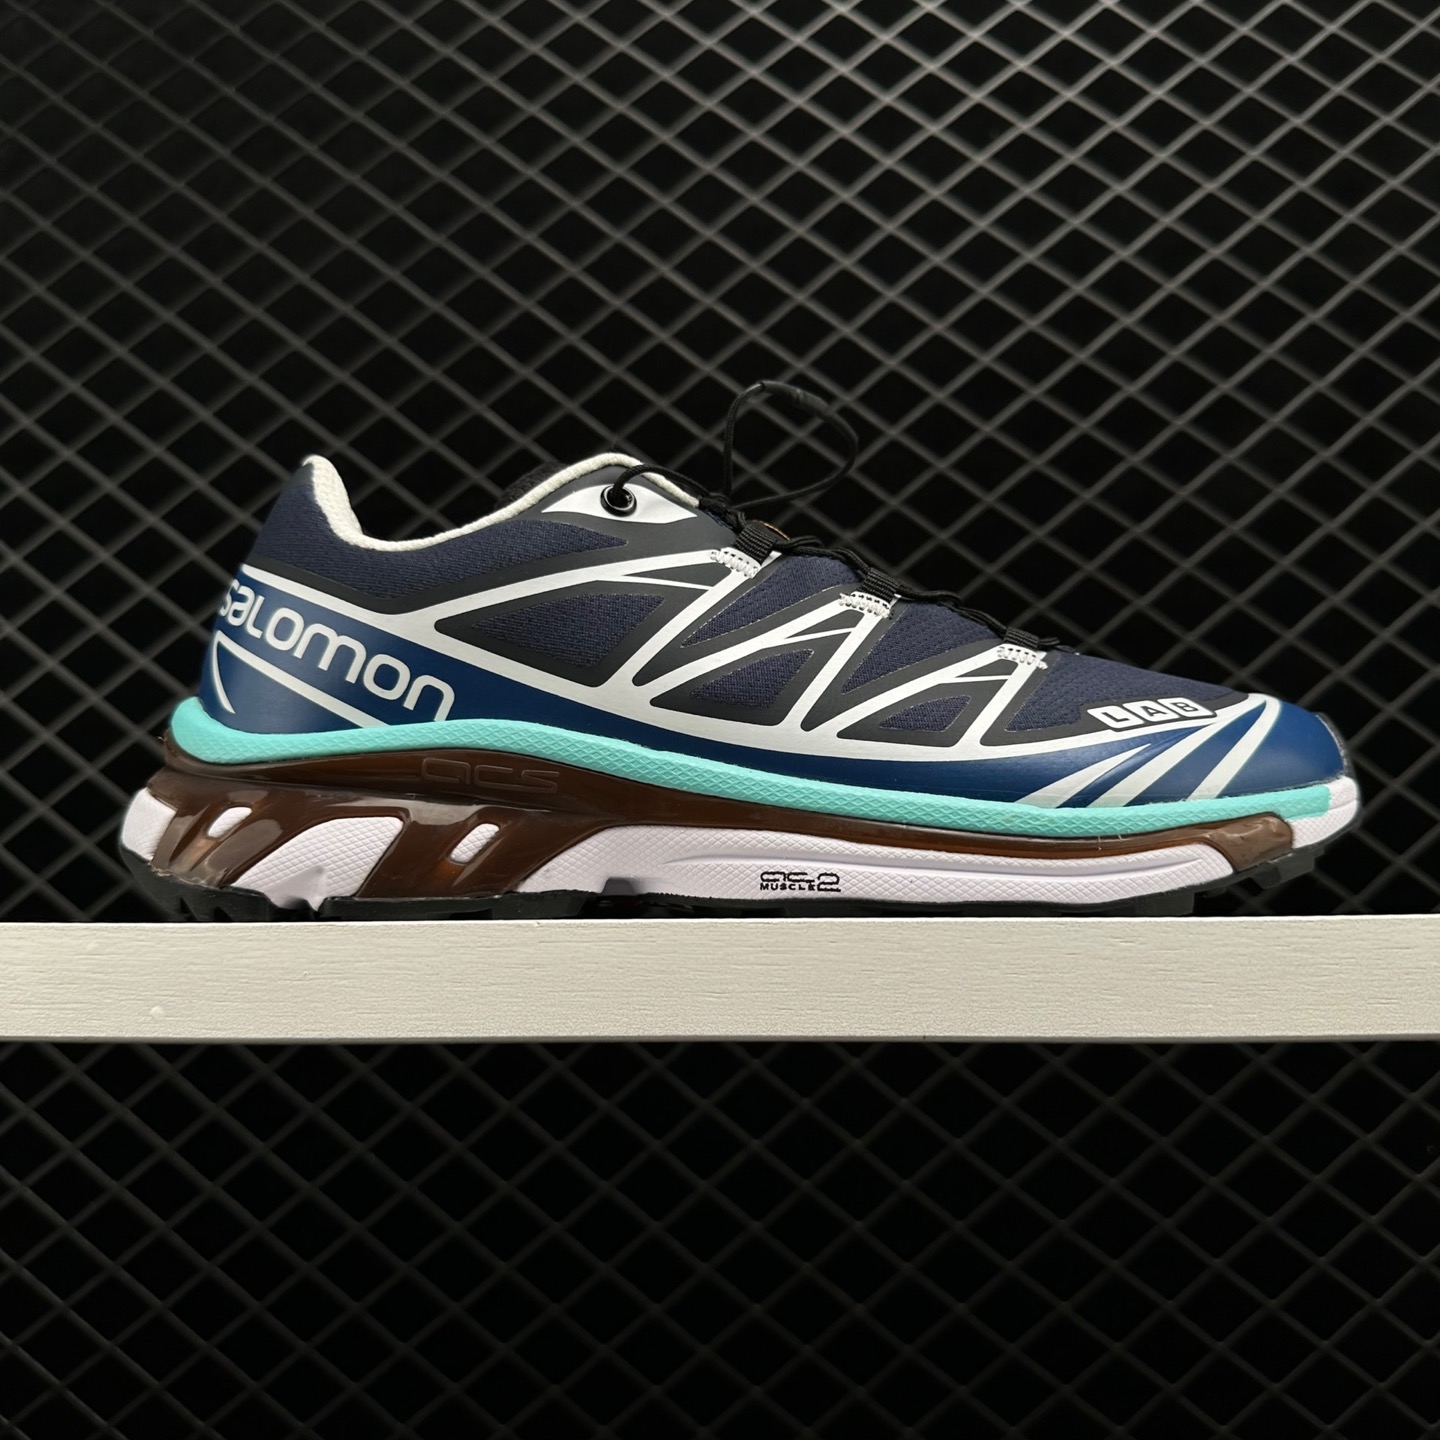 Salomon XT-6 'Ebony Vanilla Ice Atlantis' L41263700 - Premium Trail Running Shoes